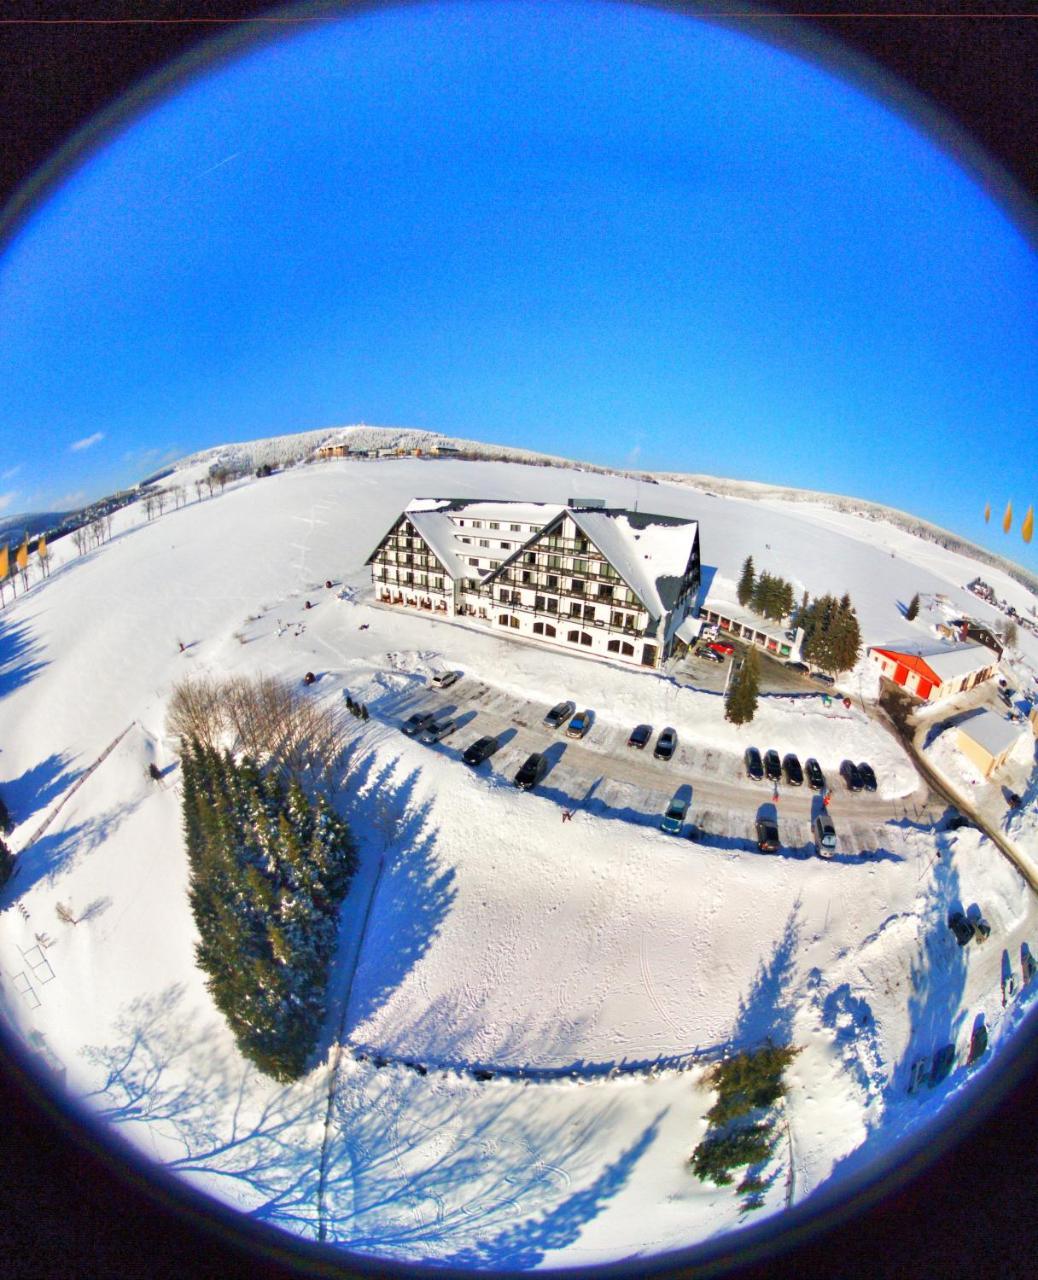 Alpina Lodge Hotel Oberwiesenthal Eksteriør billede